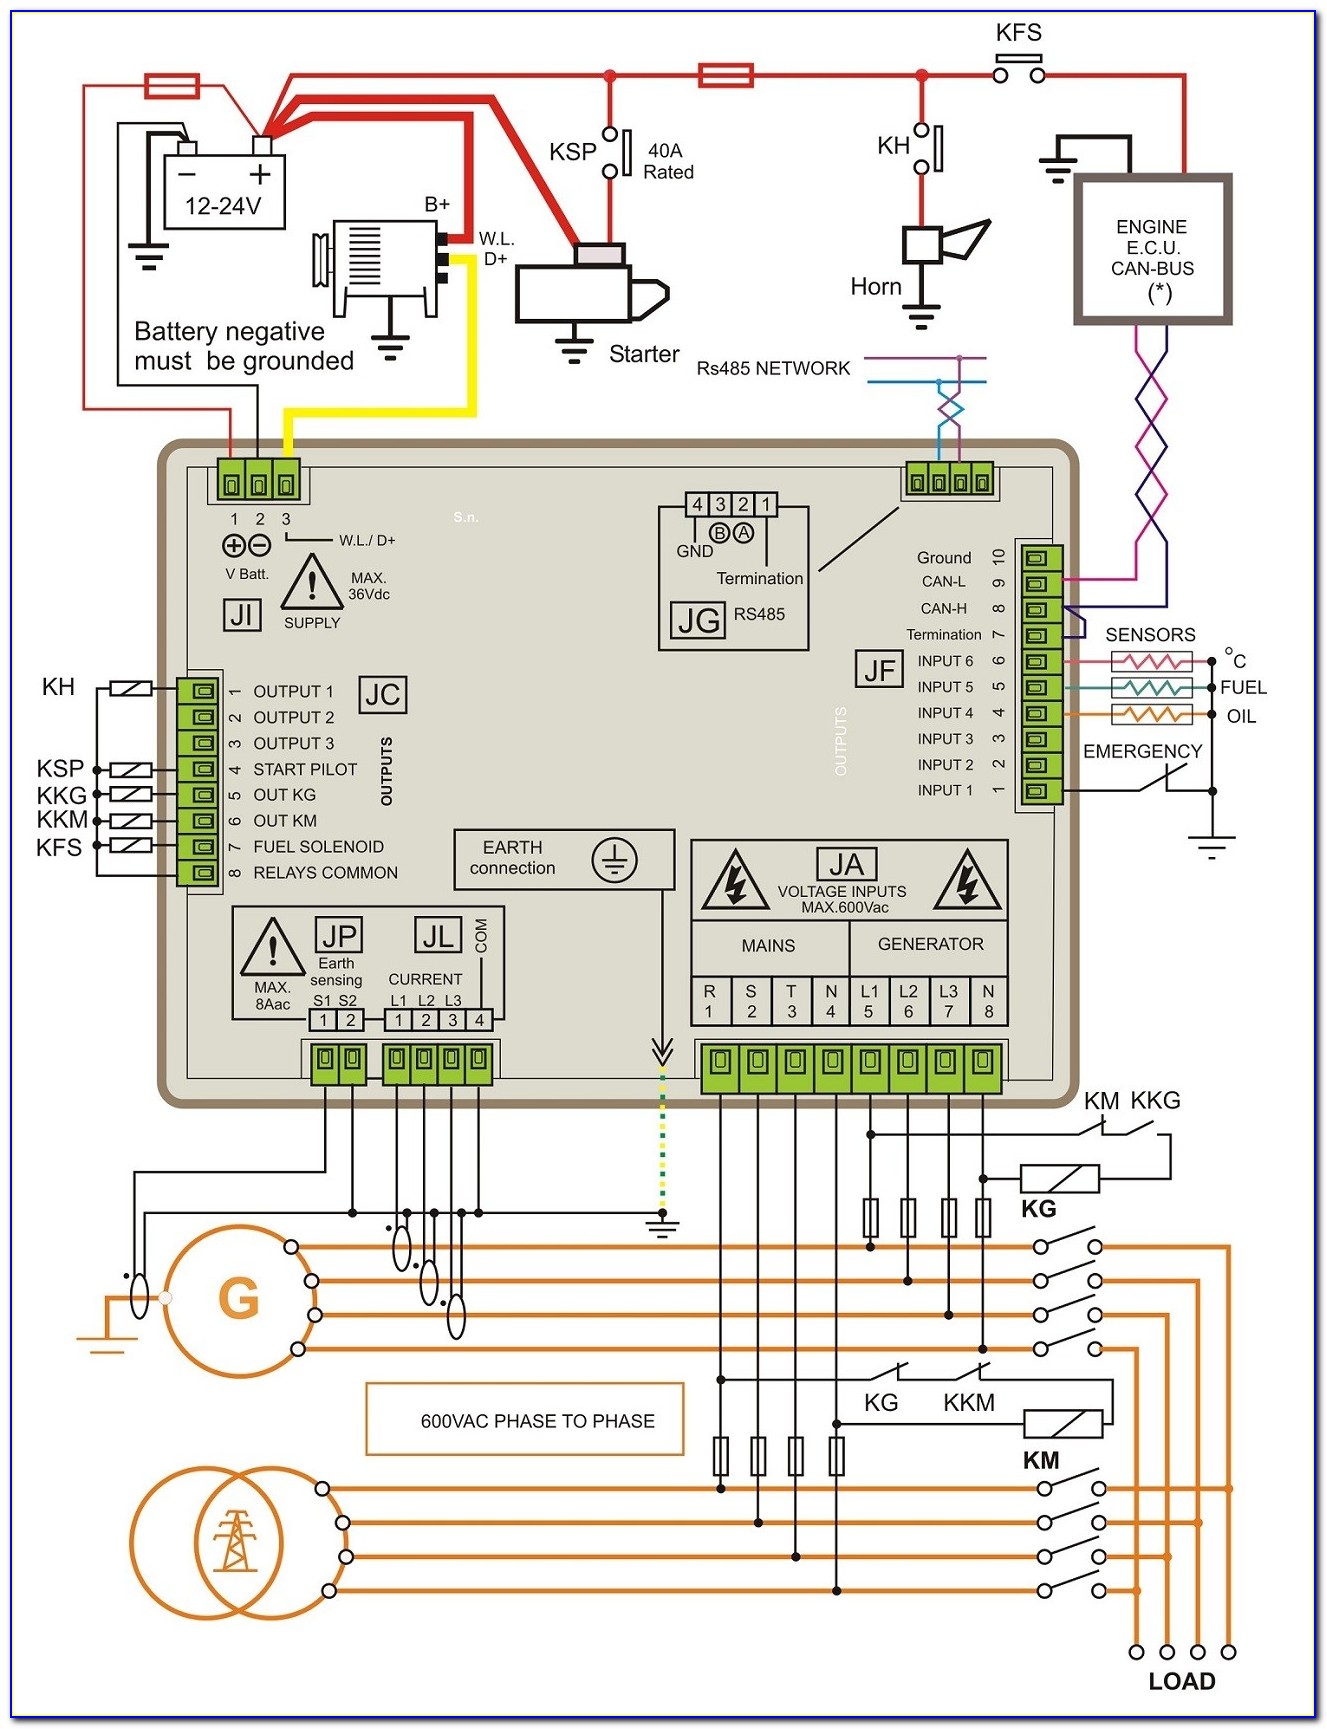 Diesel Engine Control Panel Wiring Diagram